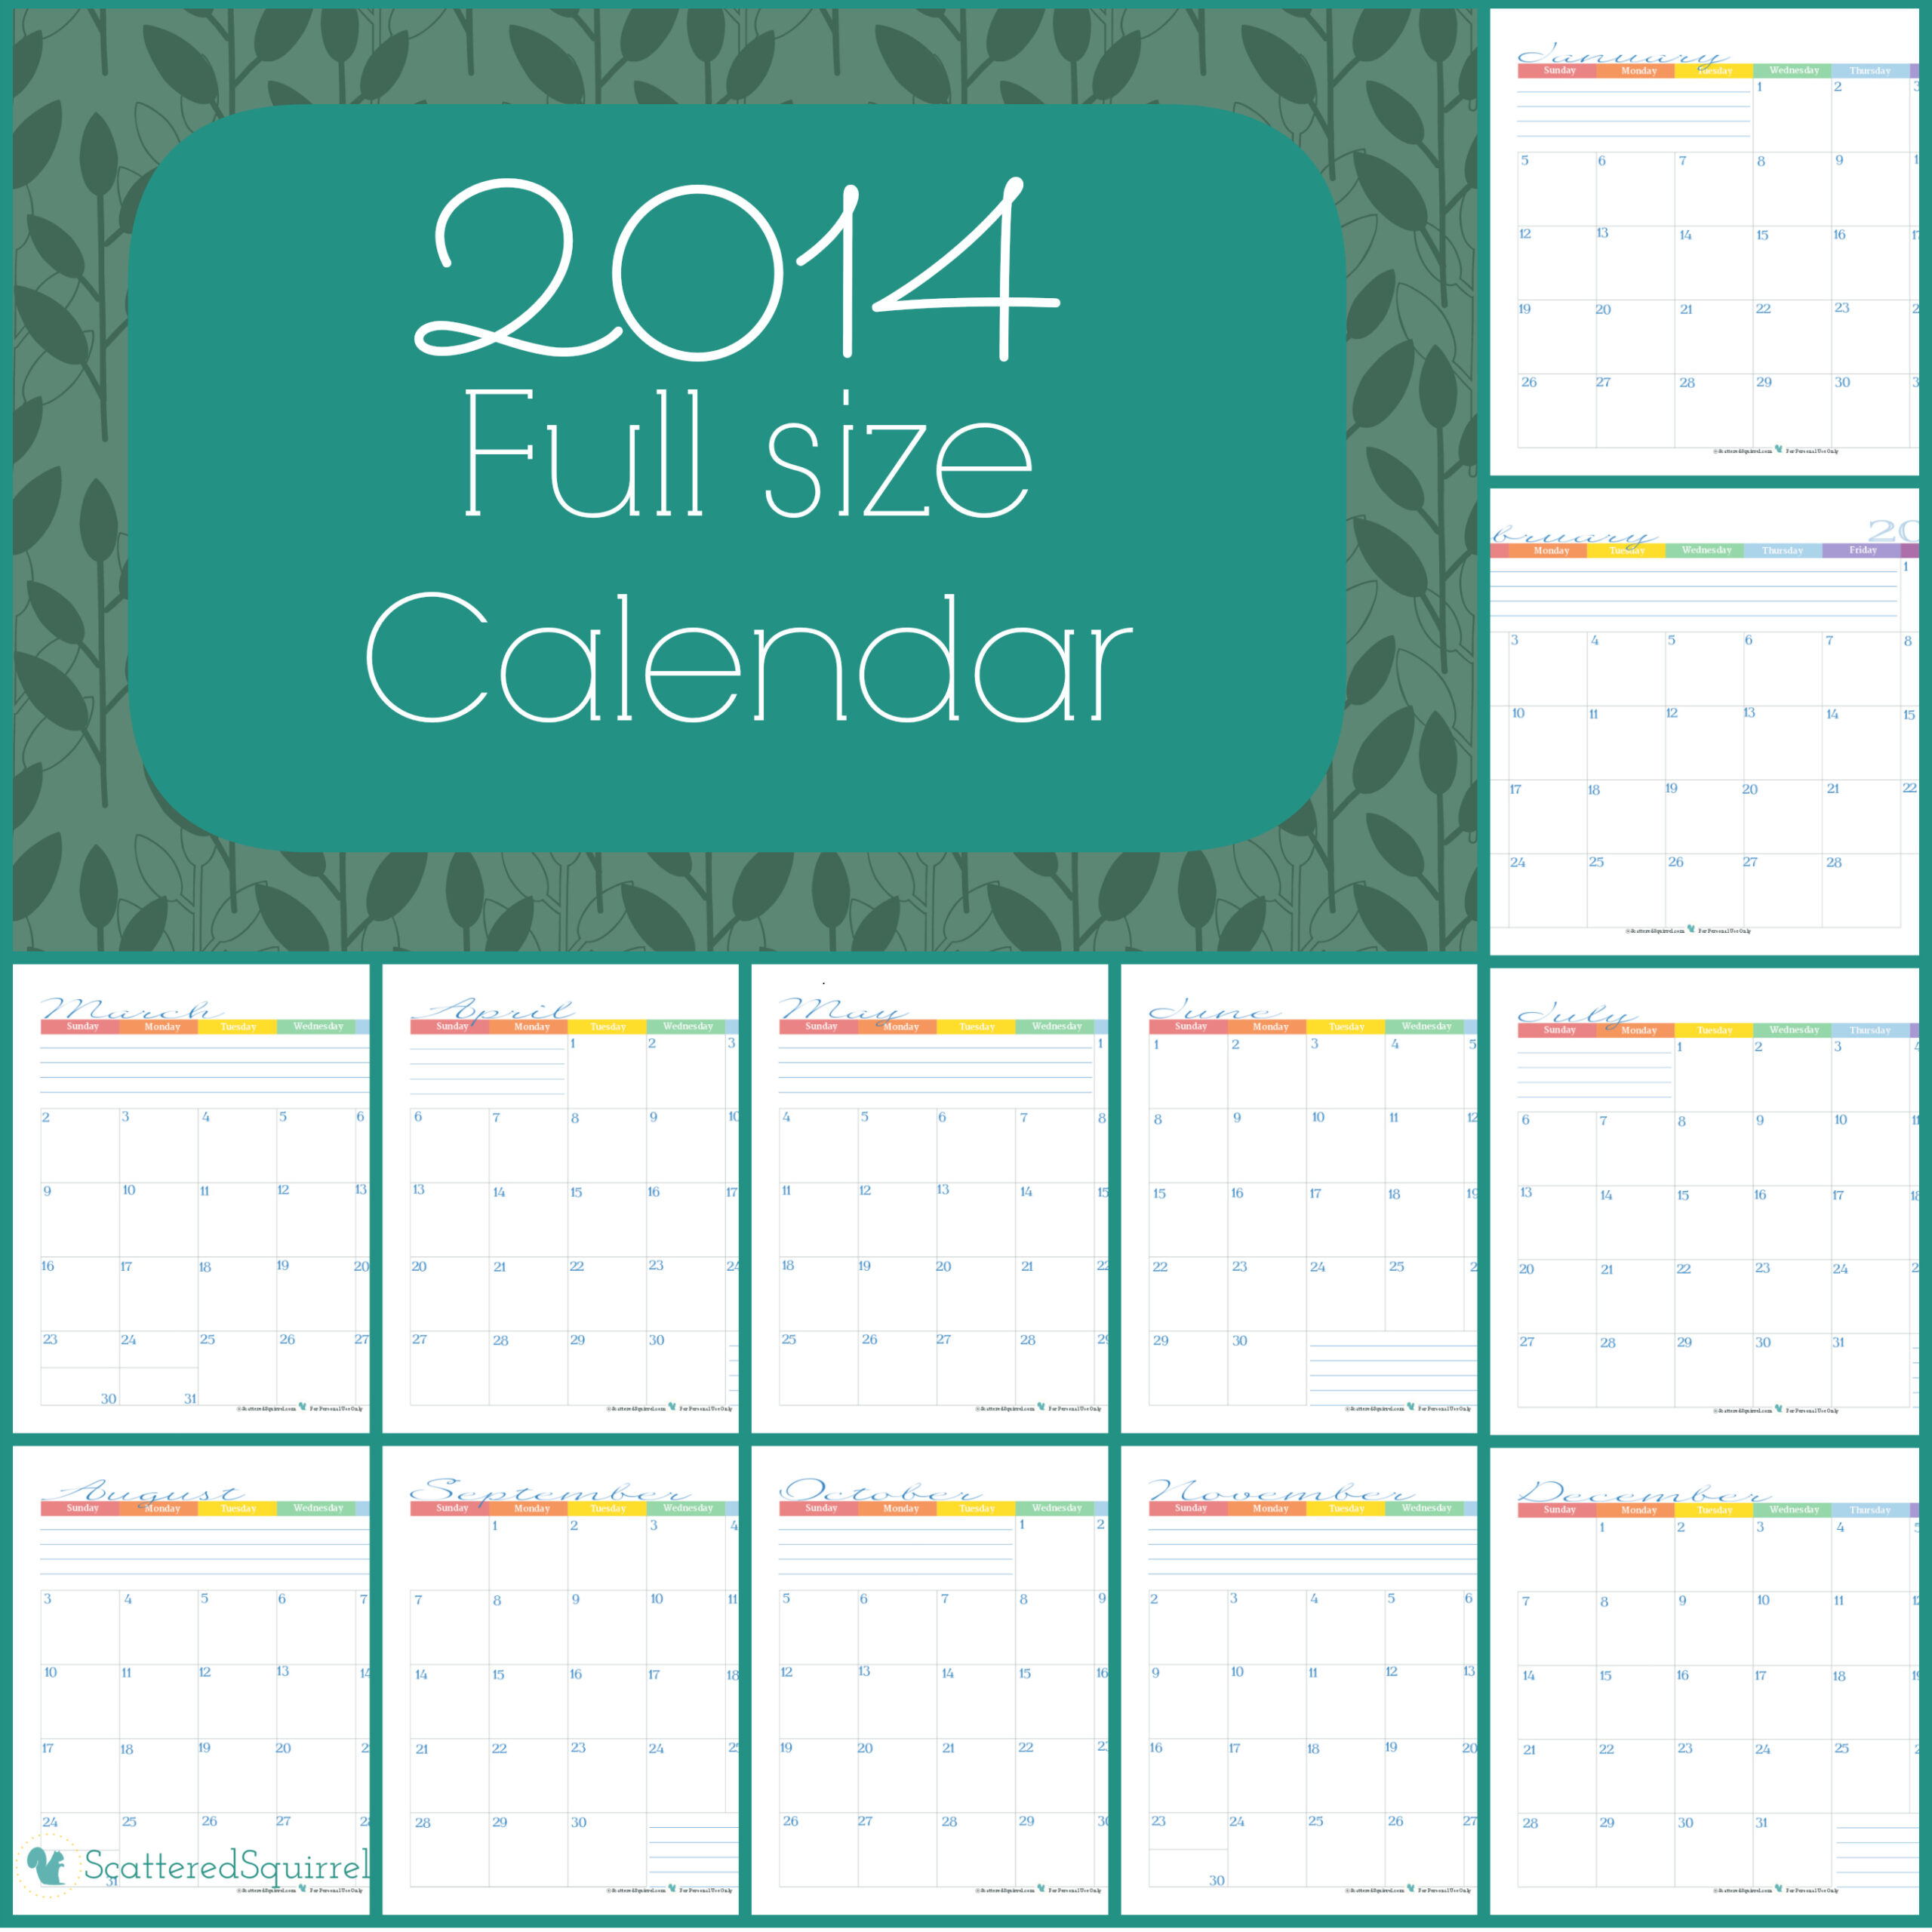 2014 Calendar: Part 1